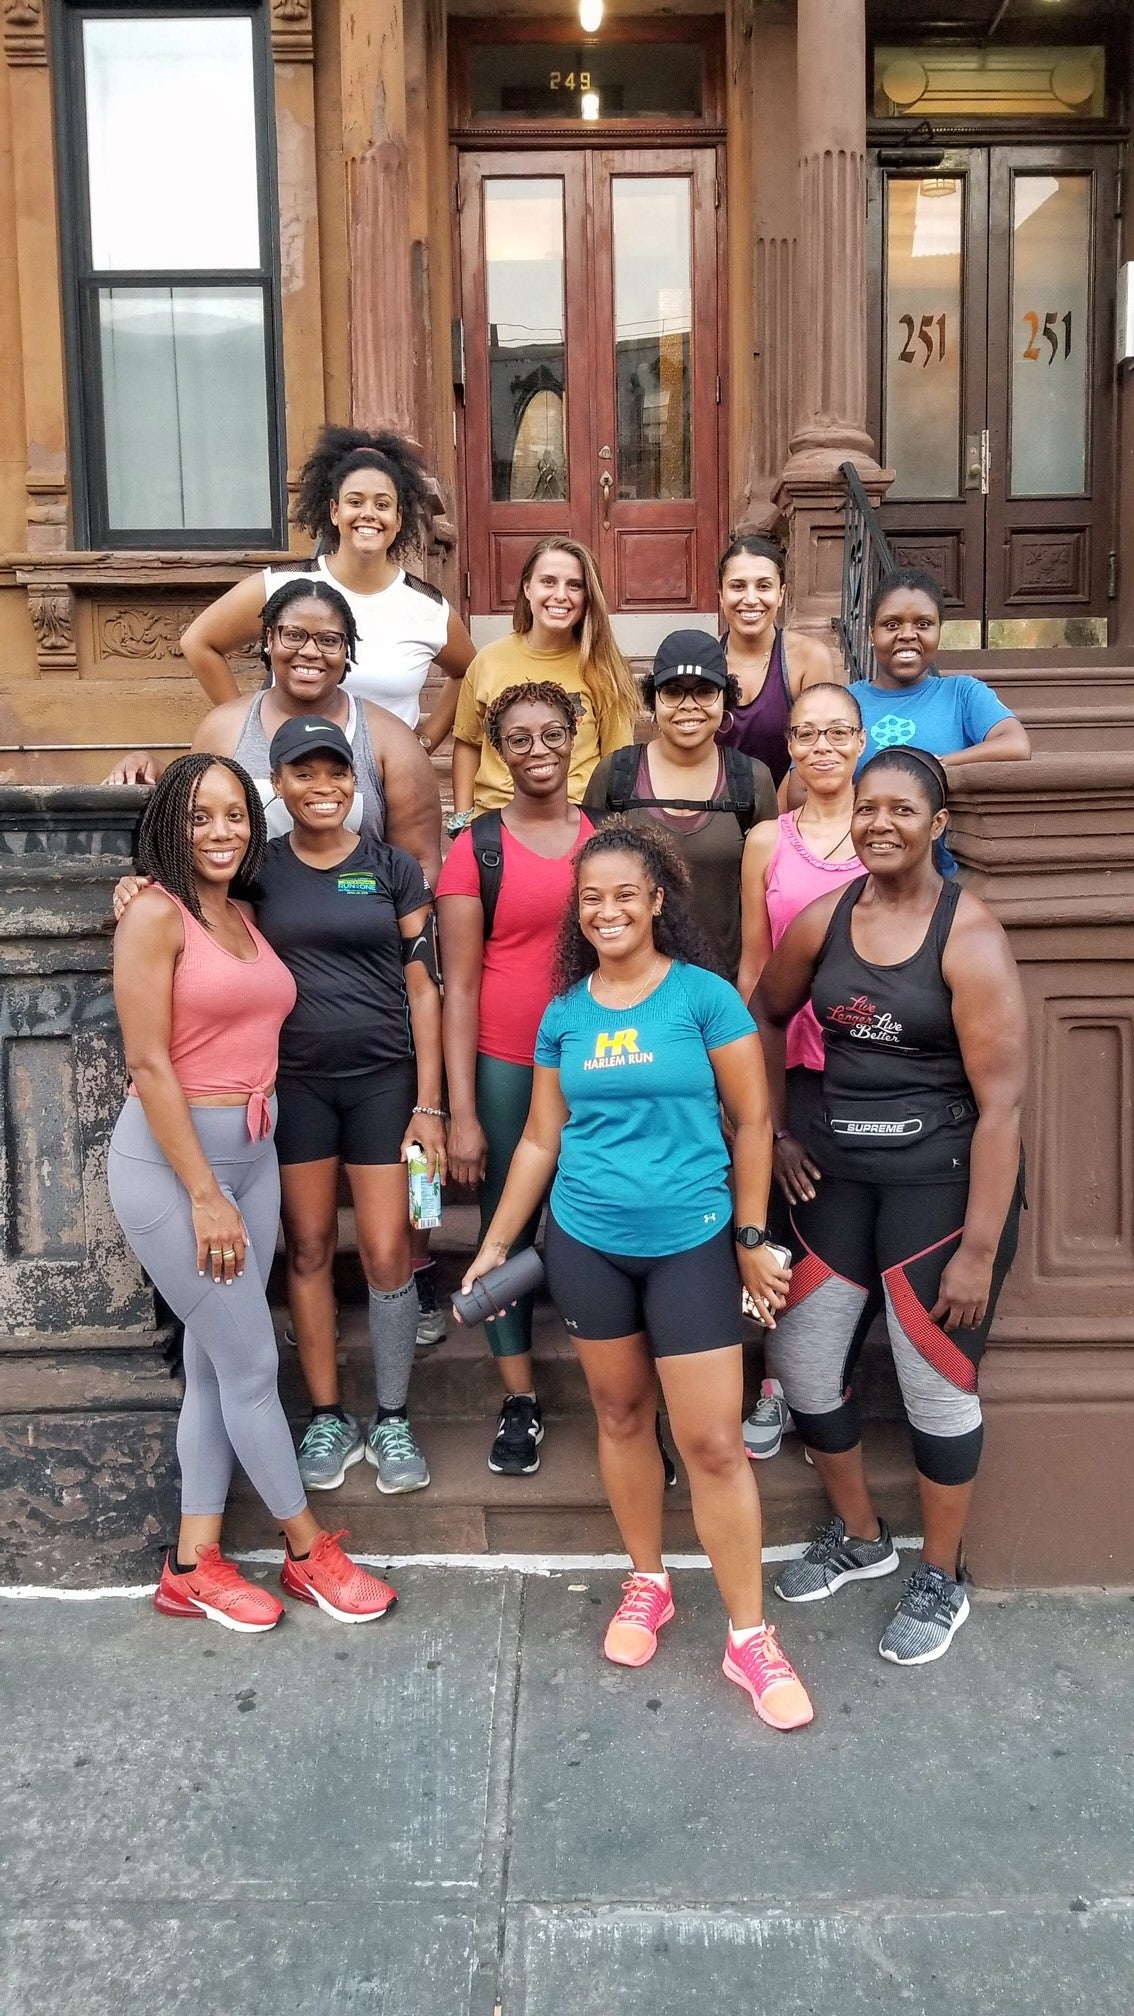 Harlem Run group